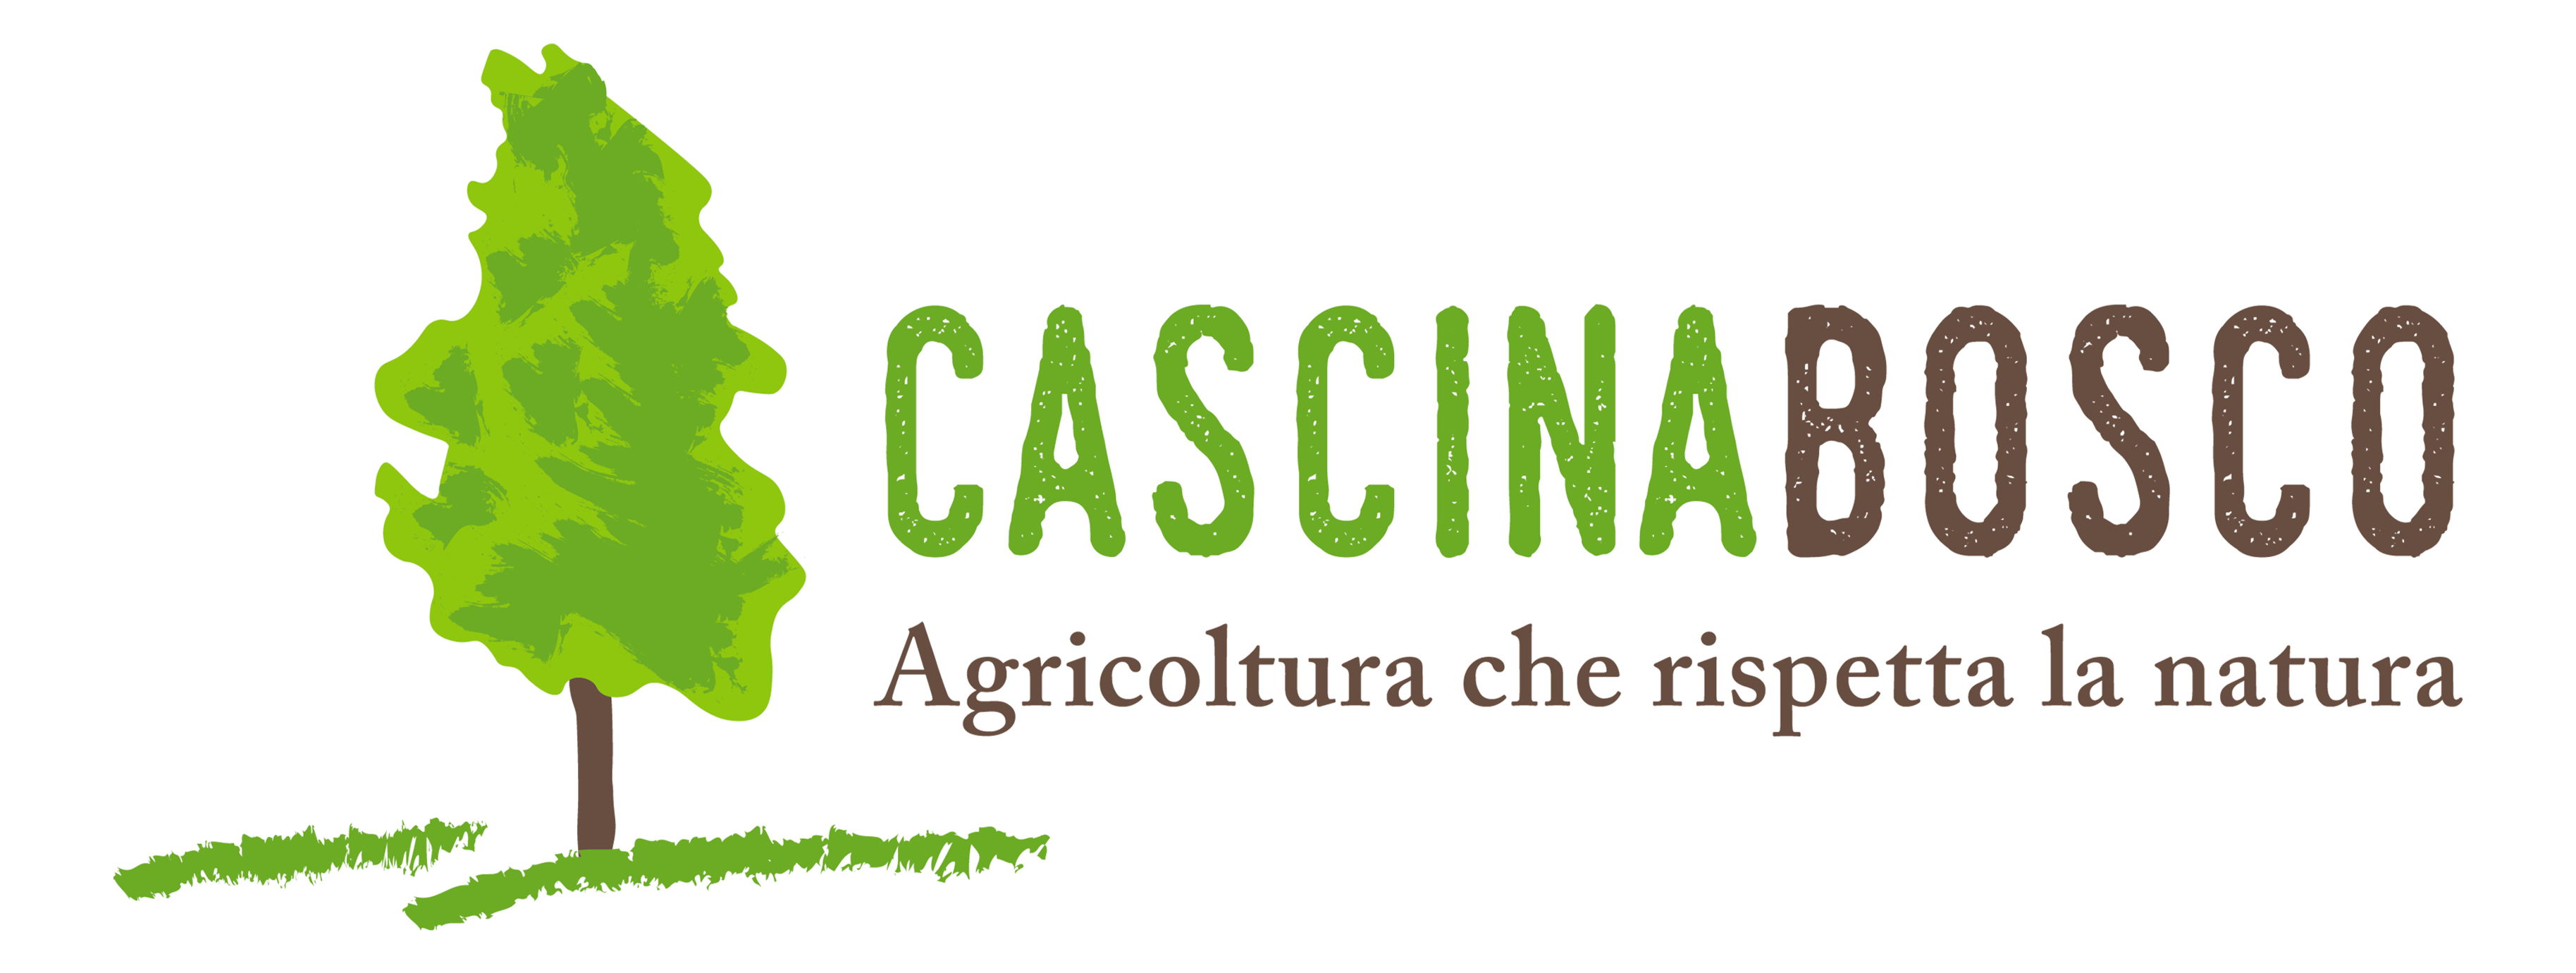 Cascina Bosco Fornasara Logo